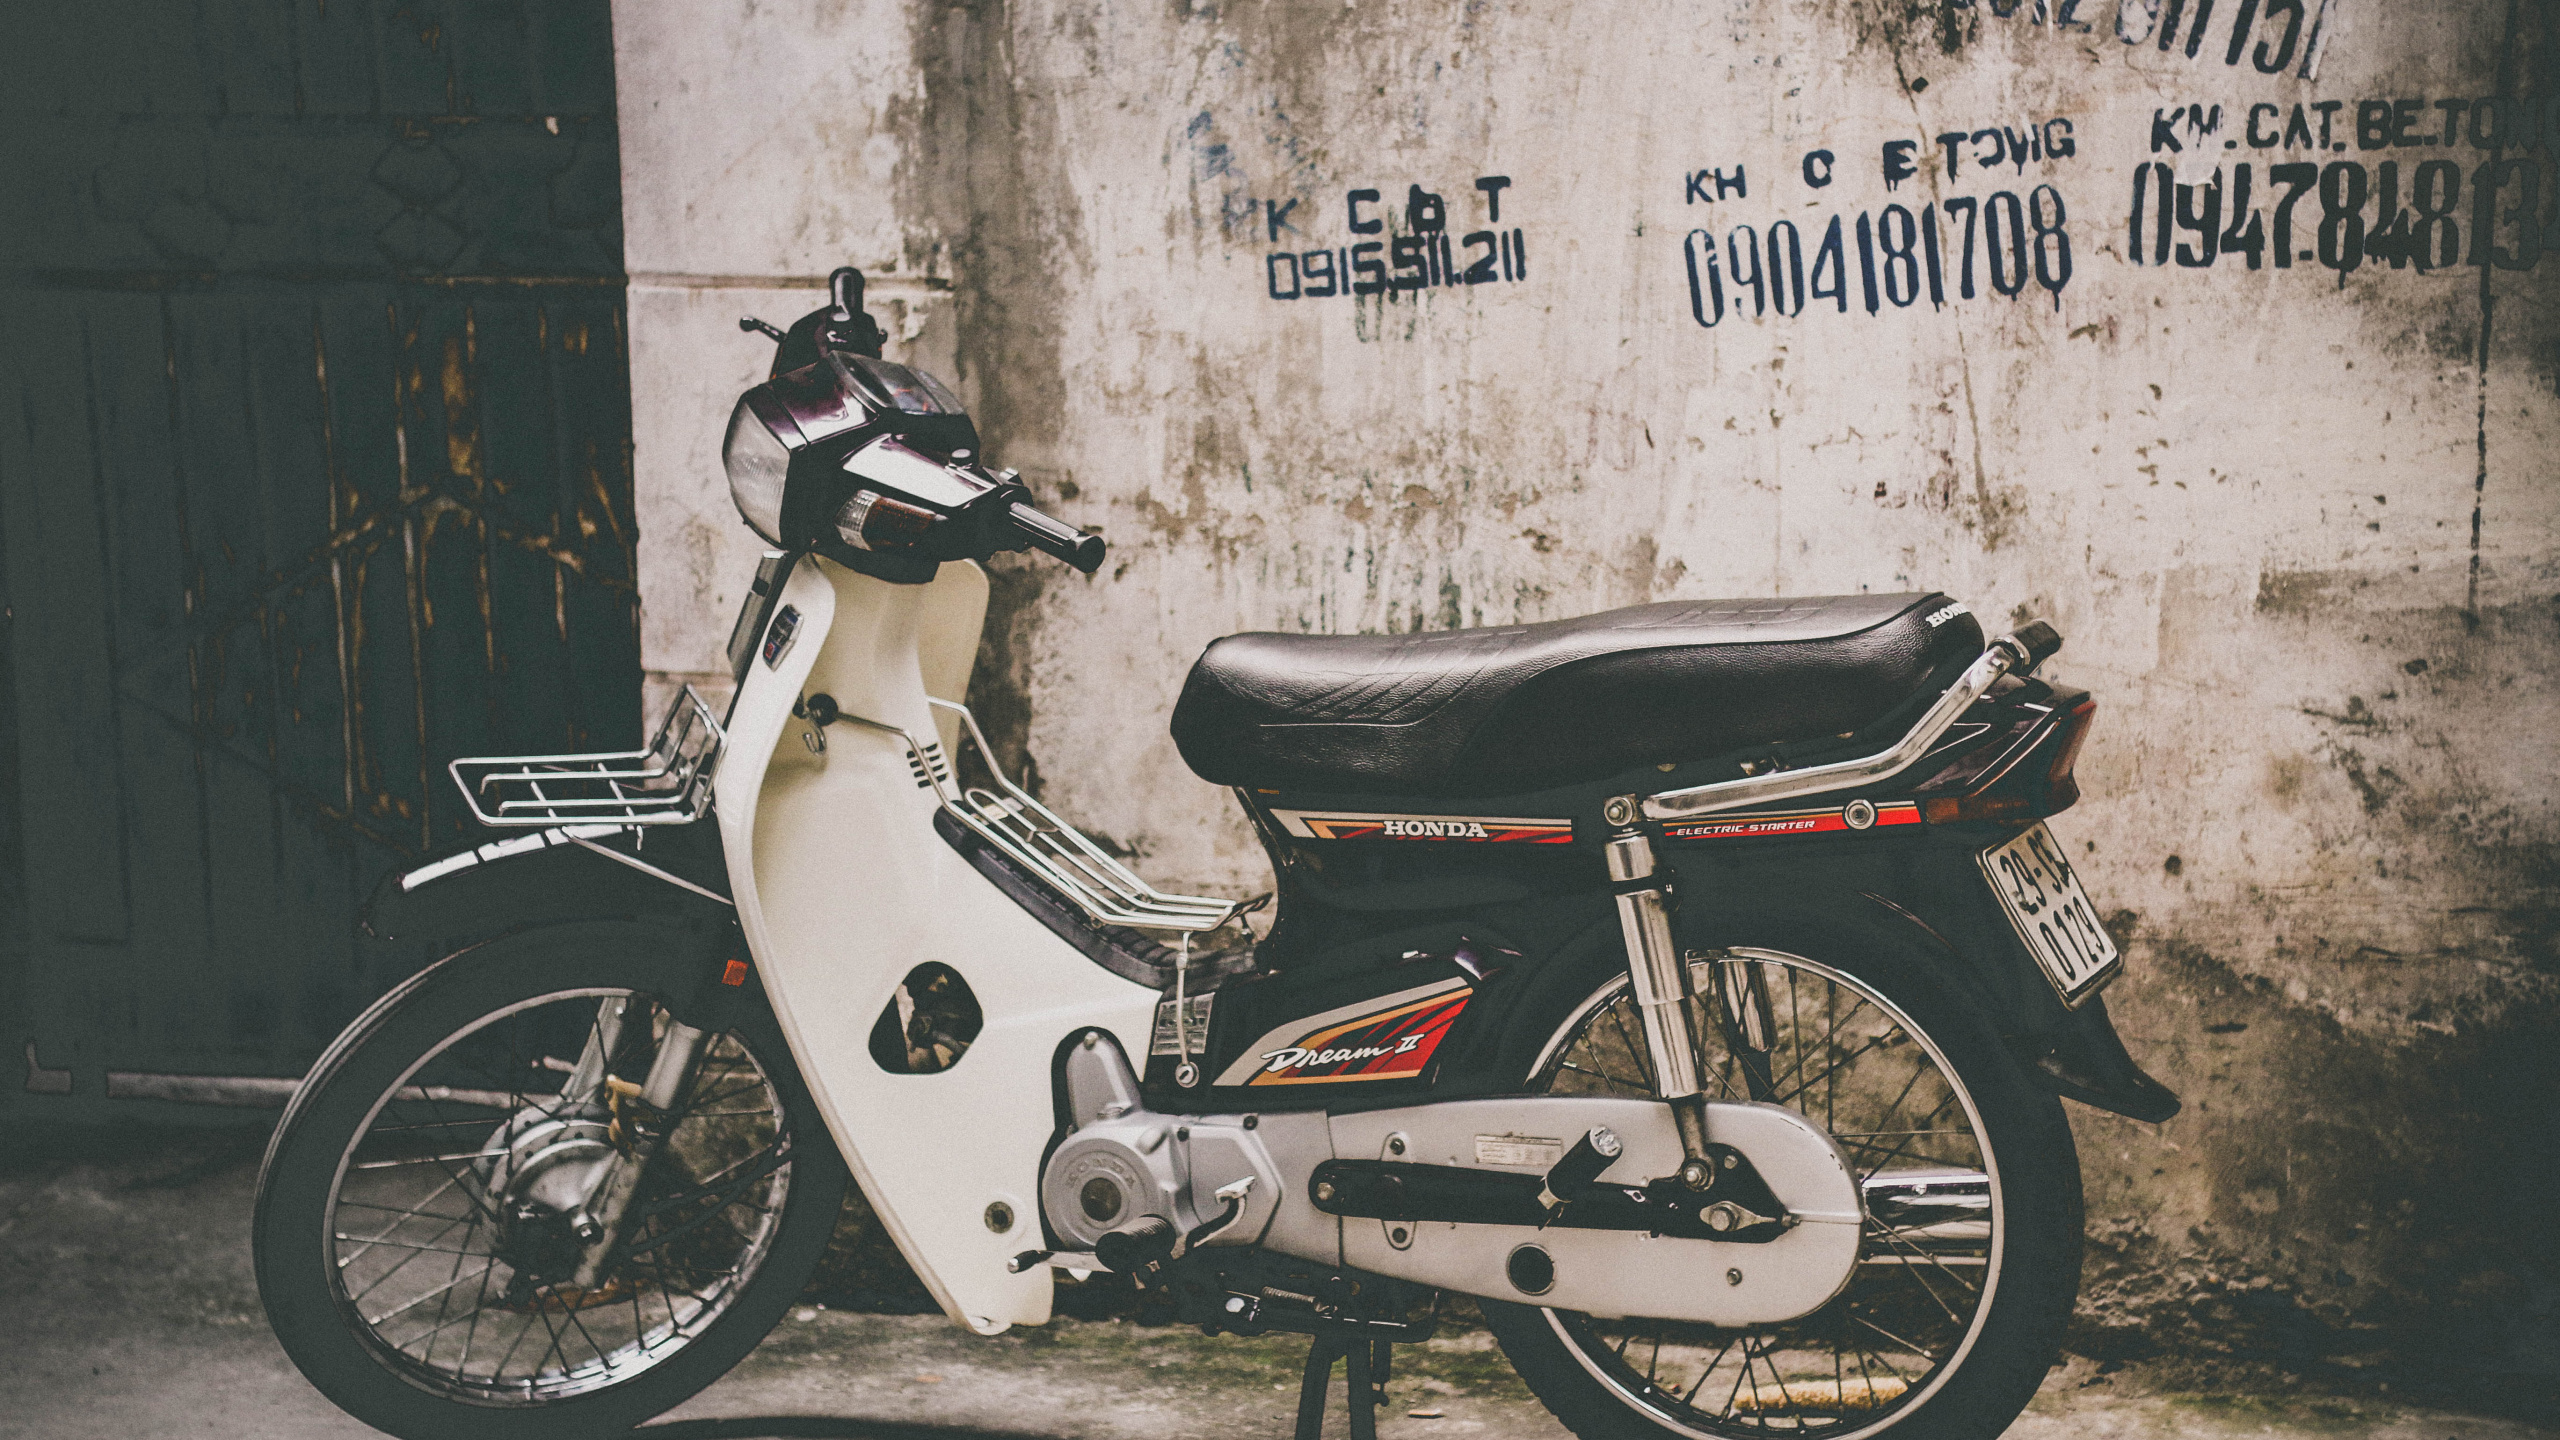 自行车, 轻便摩托车, 发言, 汽车轮胎, 胡志明市 壁纸 2560x1440 允许